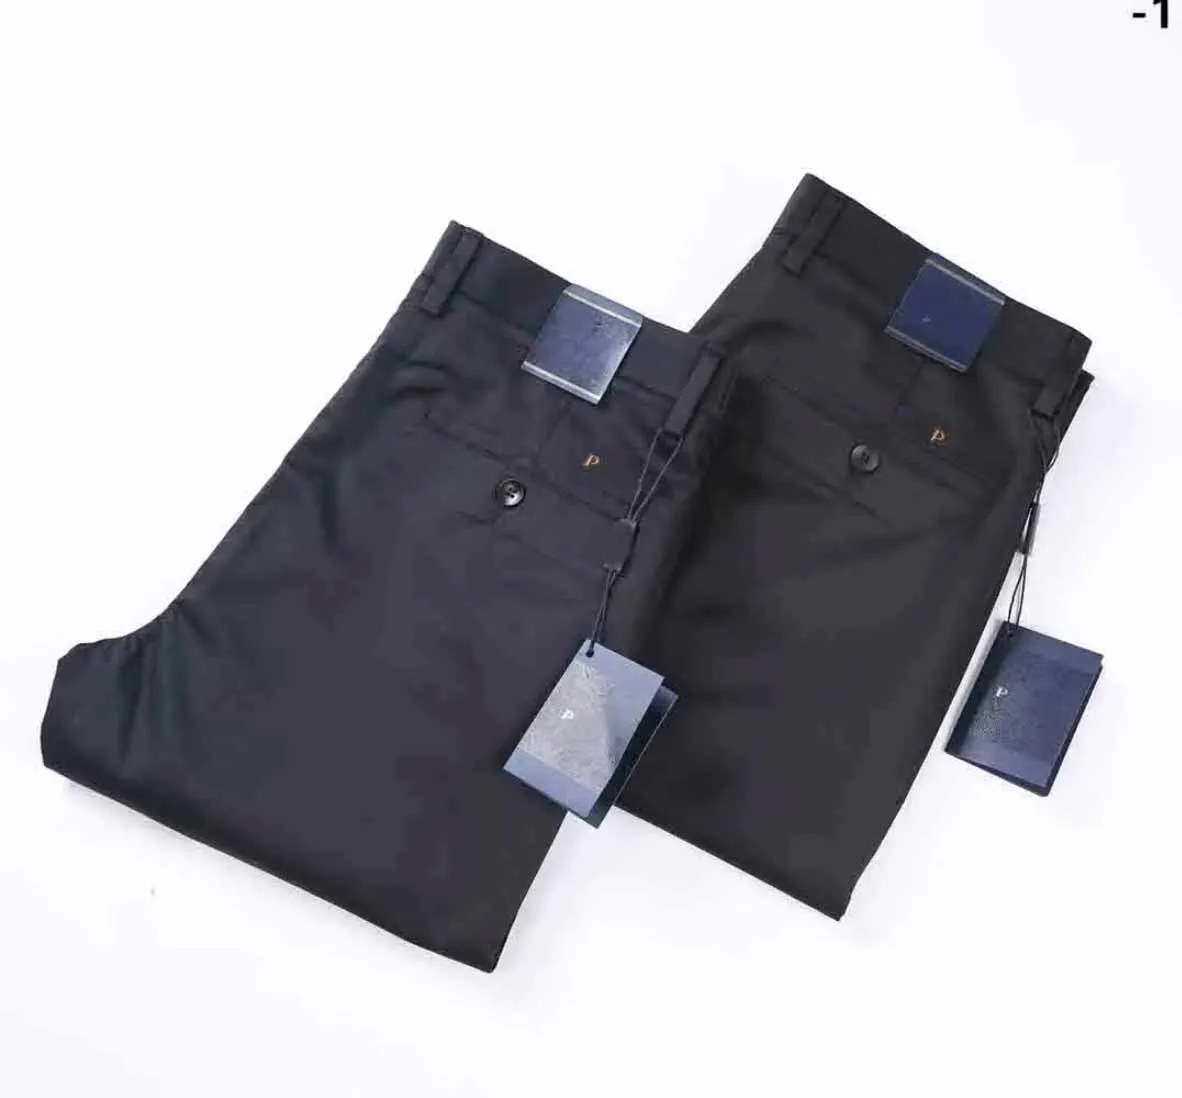 Paa Designer luksusowe spodnie męskie spodnie biznesowe spodnie biznesowe swobodne spodnie mody marka solidne kolory legginsy czarny niebieski 2 kolor elastyczne talia hurtowa